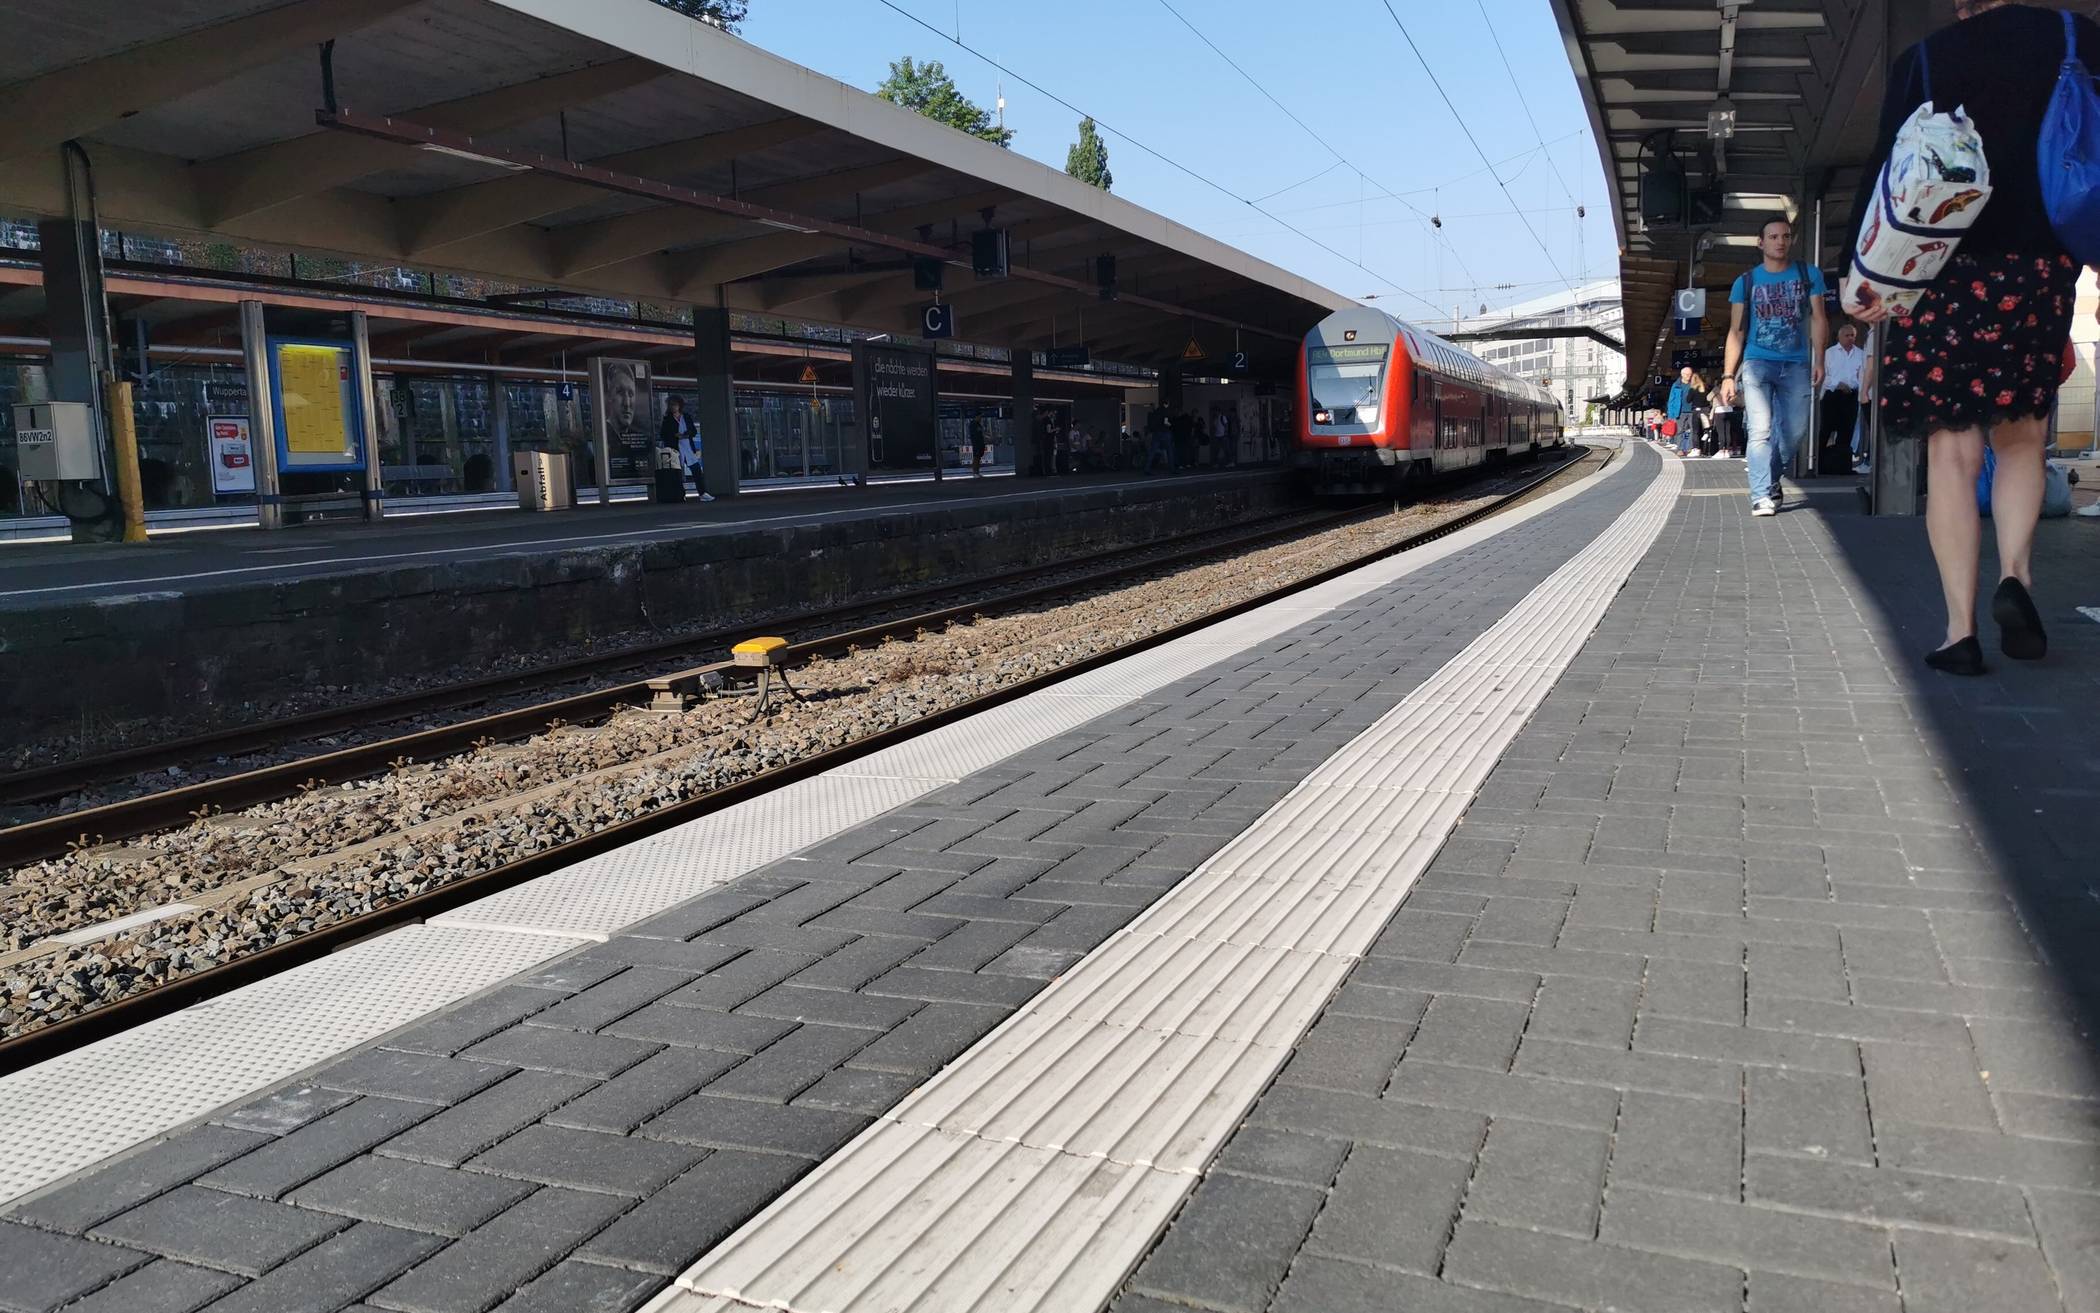 Leere Gleise erwarten Wuppertal am Wochenende